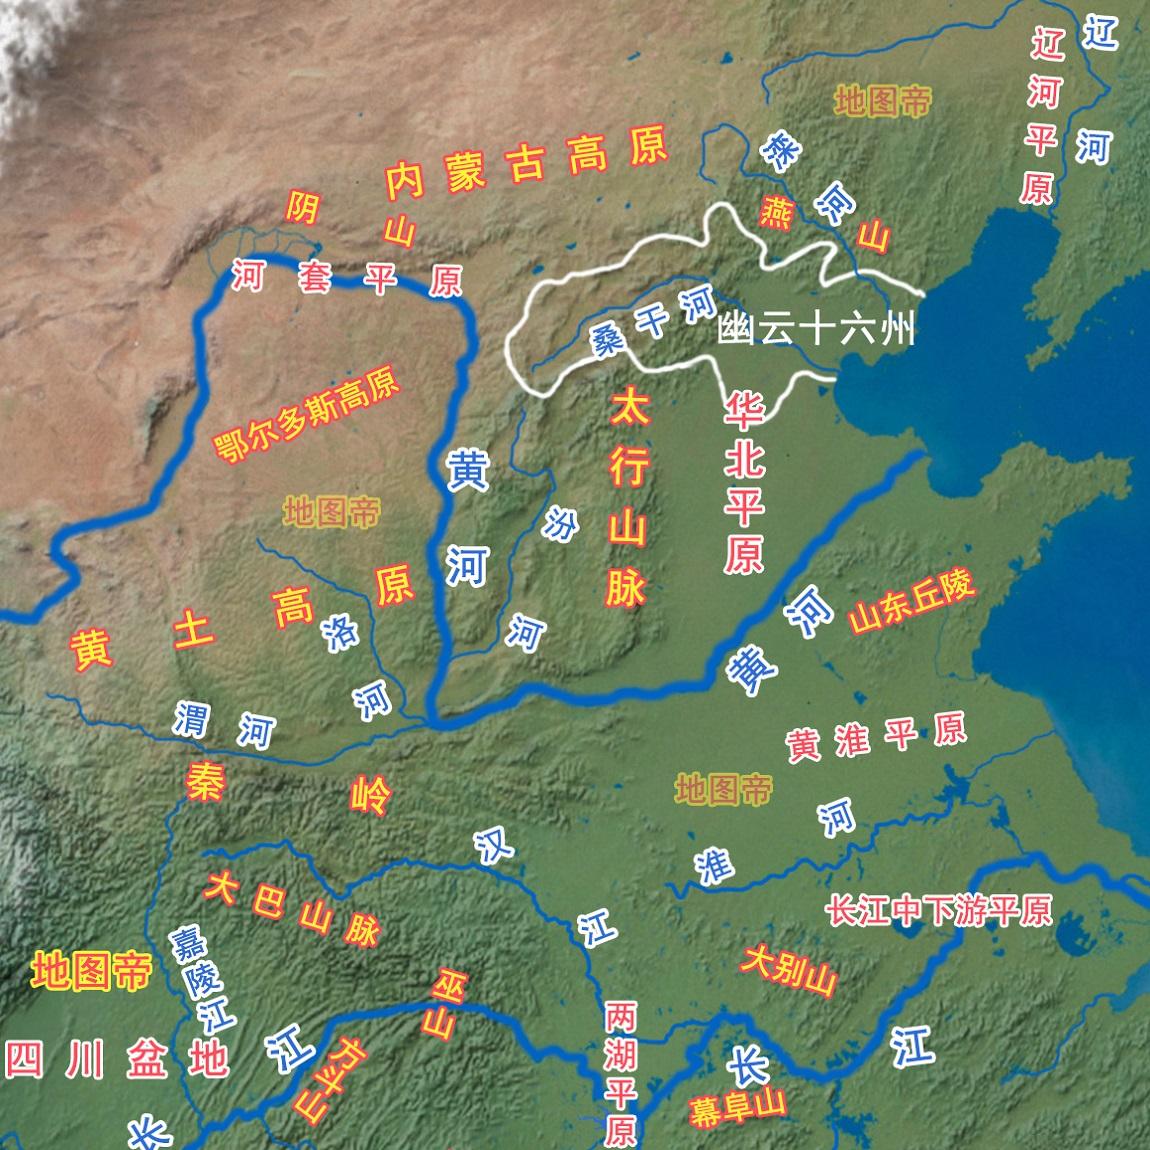 涿鹿县POI数据|边界|建筑轮廓|铁路轨道|道路路网|水域|水系水路|GeoJSON|Shapefile-张家口市-河北省-POI数据-POI数据